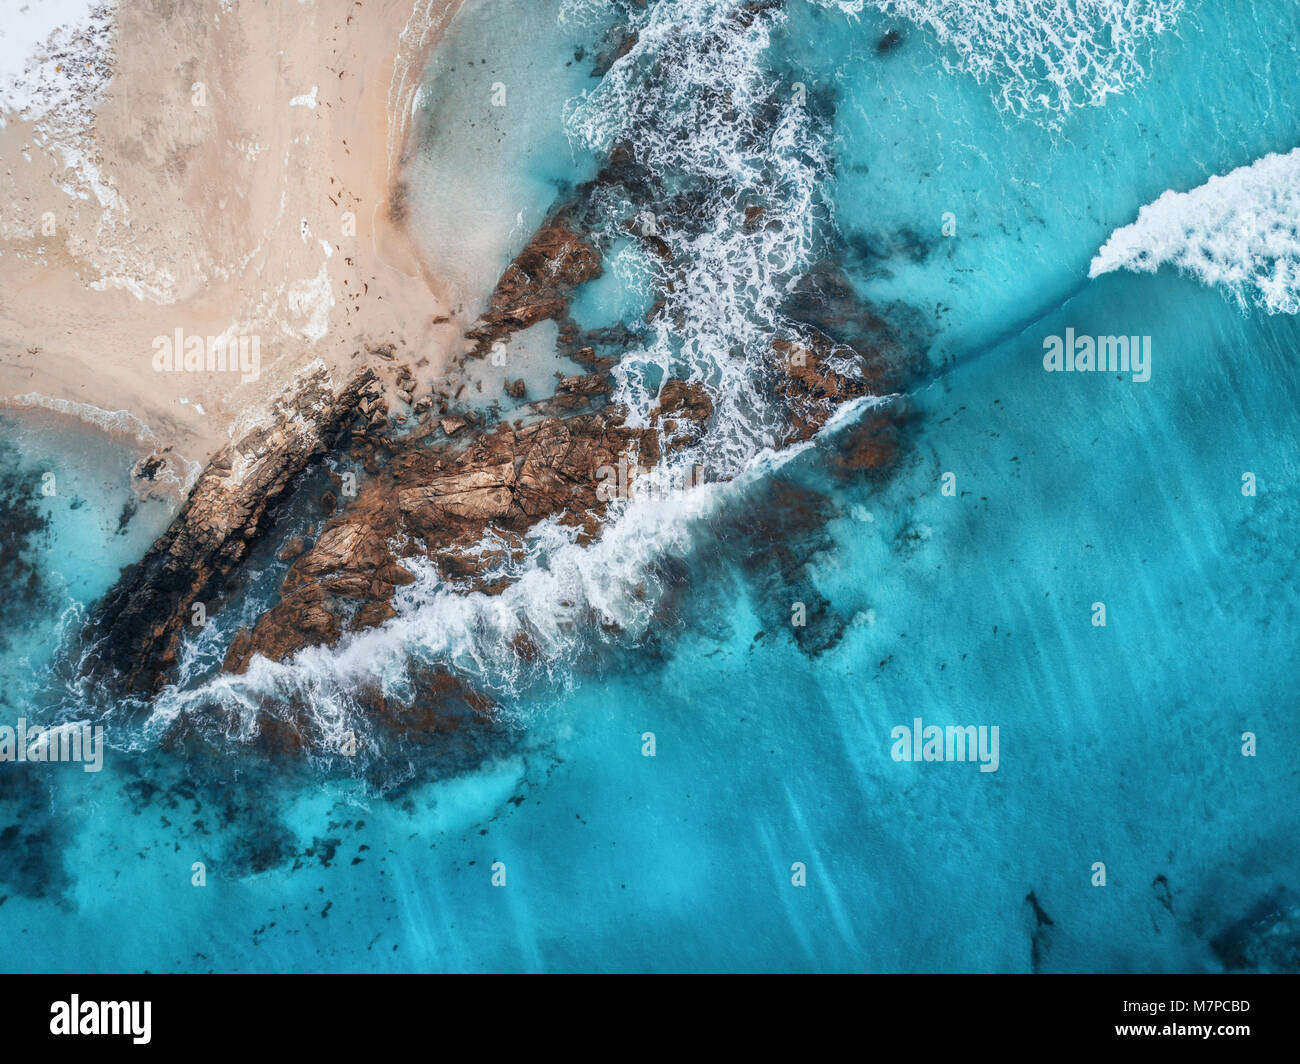 Luftaufnahme von Wellen, Felsen und transparenten Meer. Sommer Meereslandschaft mit Meer, Sandstrand, schöne Wellen, Felsen, blaues Wasser bei Sonnenuntergang. Blick von oben Stockfoto